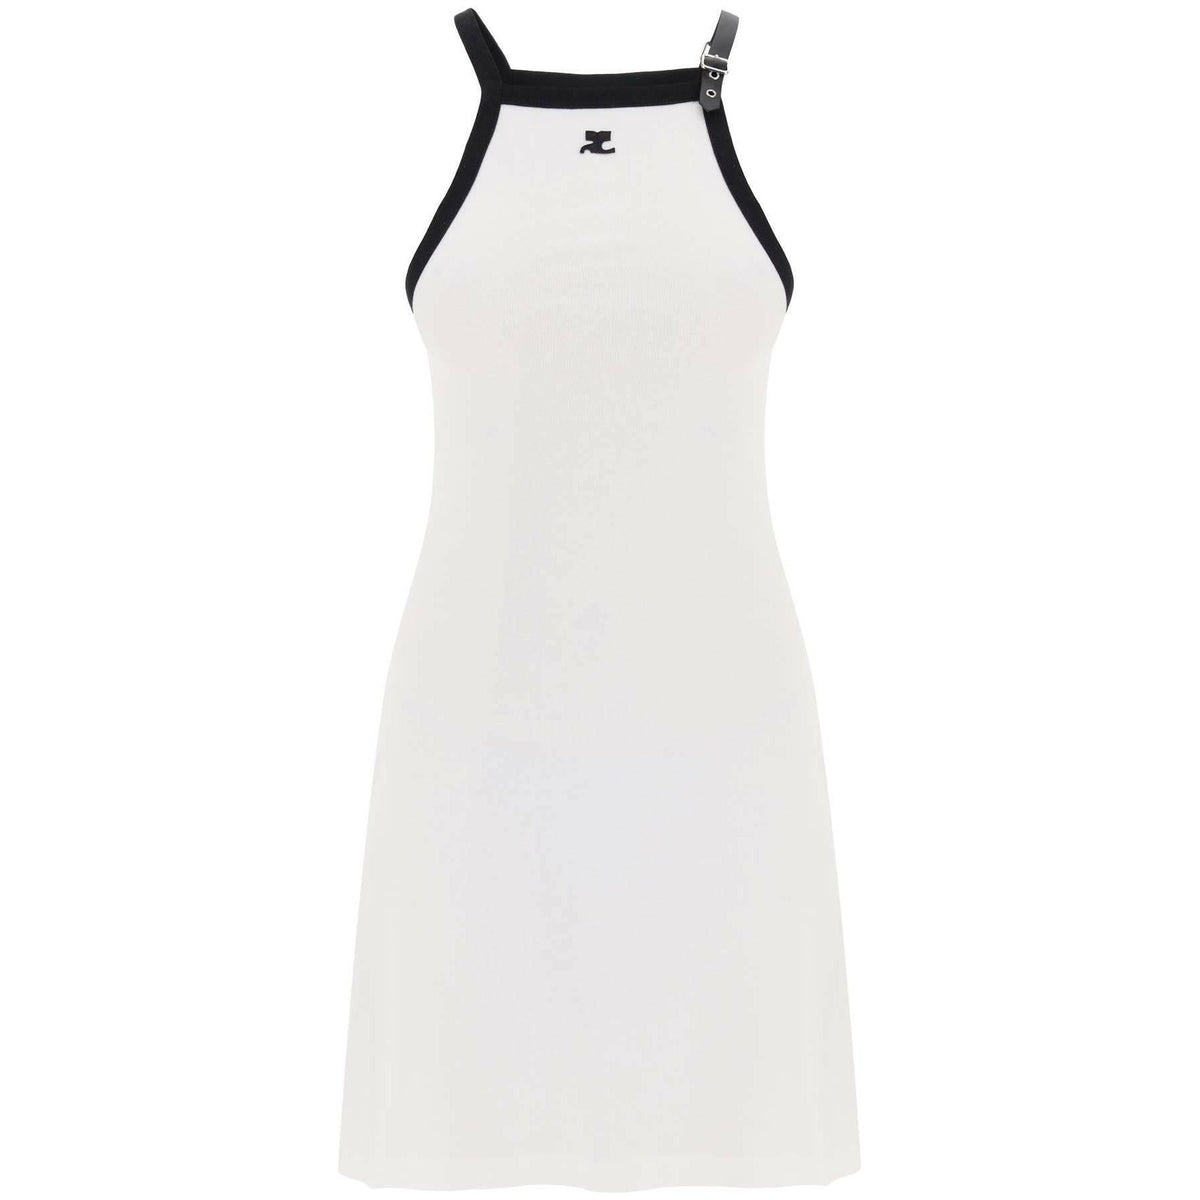 COURREGES - Heritage White and Black Trim Cotton Mini Dress - JOHN JULIA